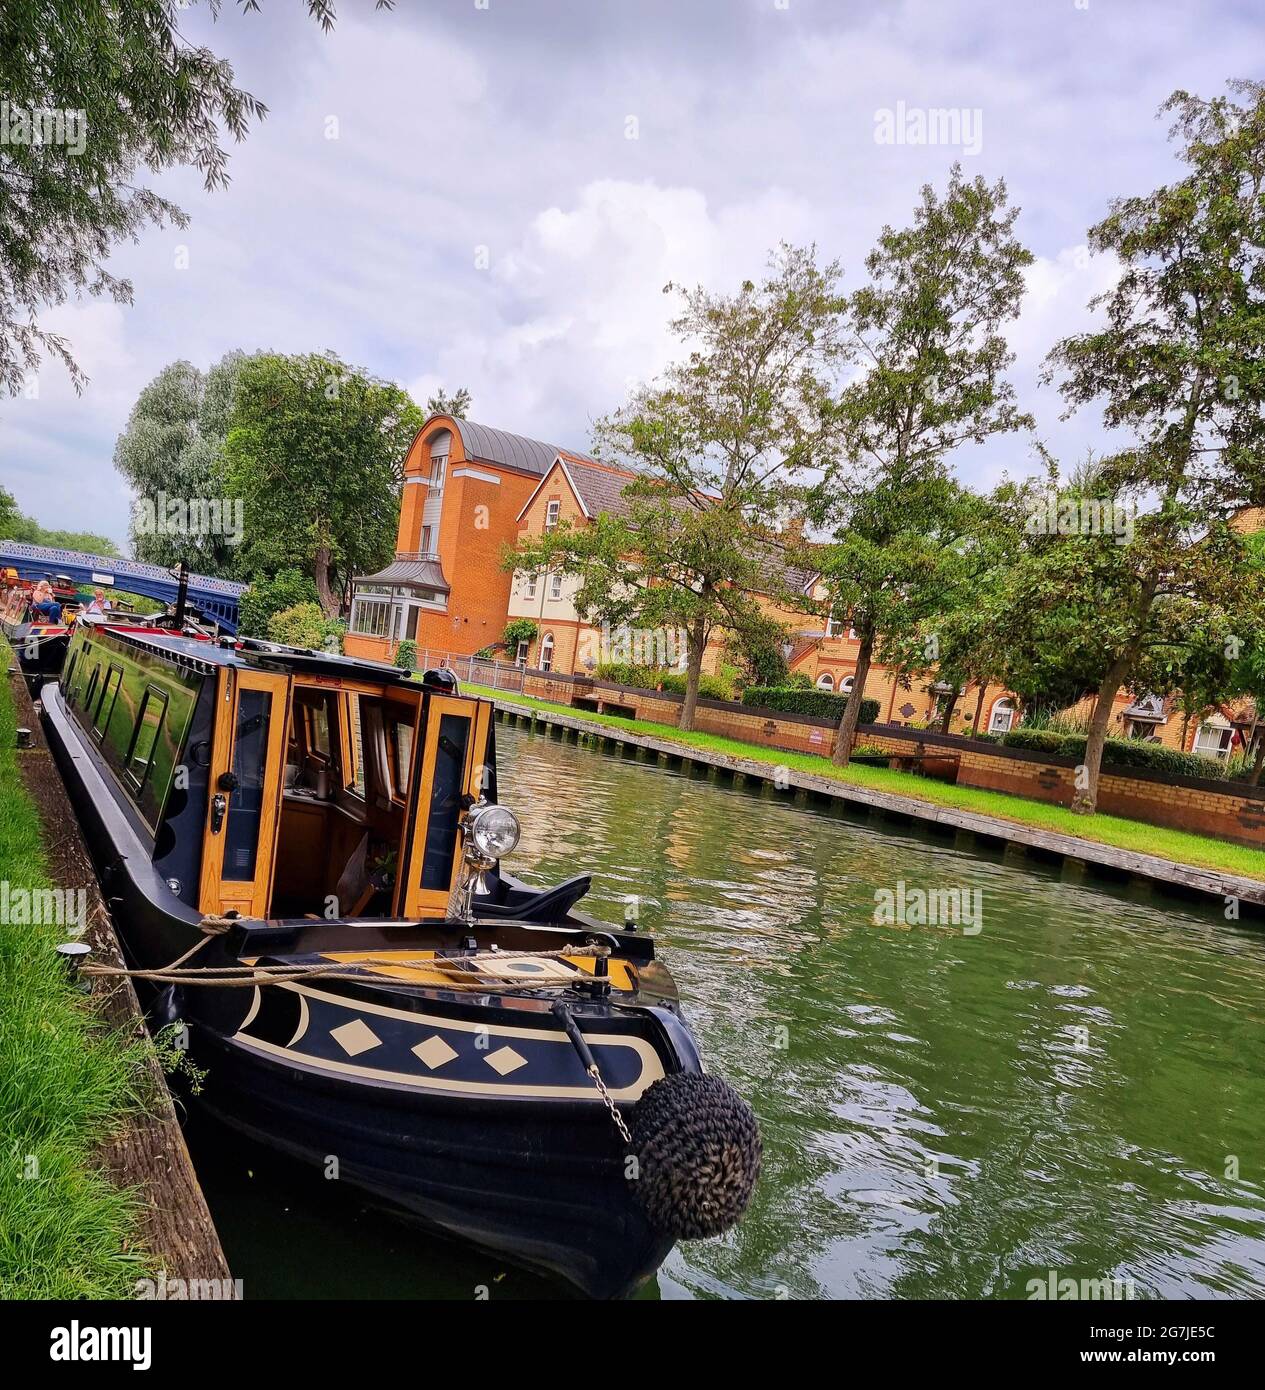 Kanalboote, Skiffs, Passagierdampfer und Ruderboote befinden sich alle auf der Themse, dem schönsten Fluss Englands, der von seiner Quelle im Herzen der Cotswolds durch eine ländliche Idylle über Oxford fließt, die von Wasserwiesen und Viehweiden geprägt ist. Treffen Sie den Oxford Canal in der „City of Dreaming Spires“ mit einer fantastischen Aussicht. Jenseits von Oxford verbindet die Royal River Thames viele schöne und einige berühmte Städte und Dörfer am Wasser, die von historischen Gebäuden und Denkmälern übereinander stehen. Vereinigtes Königreich. Stockfoto